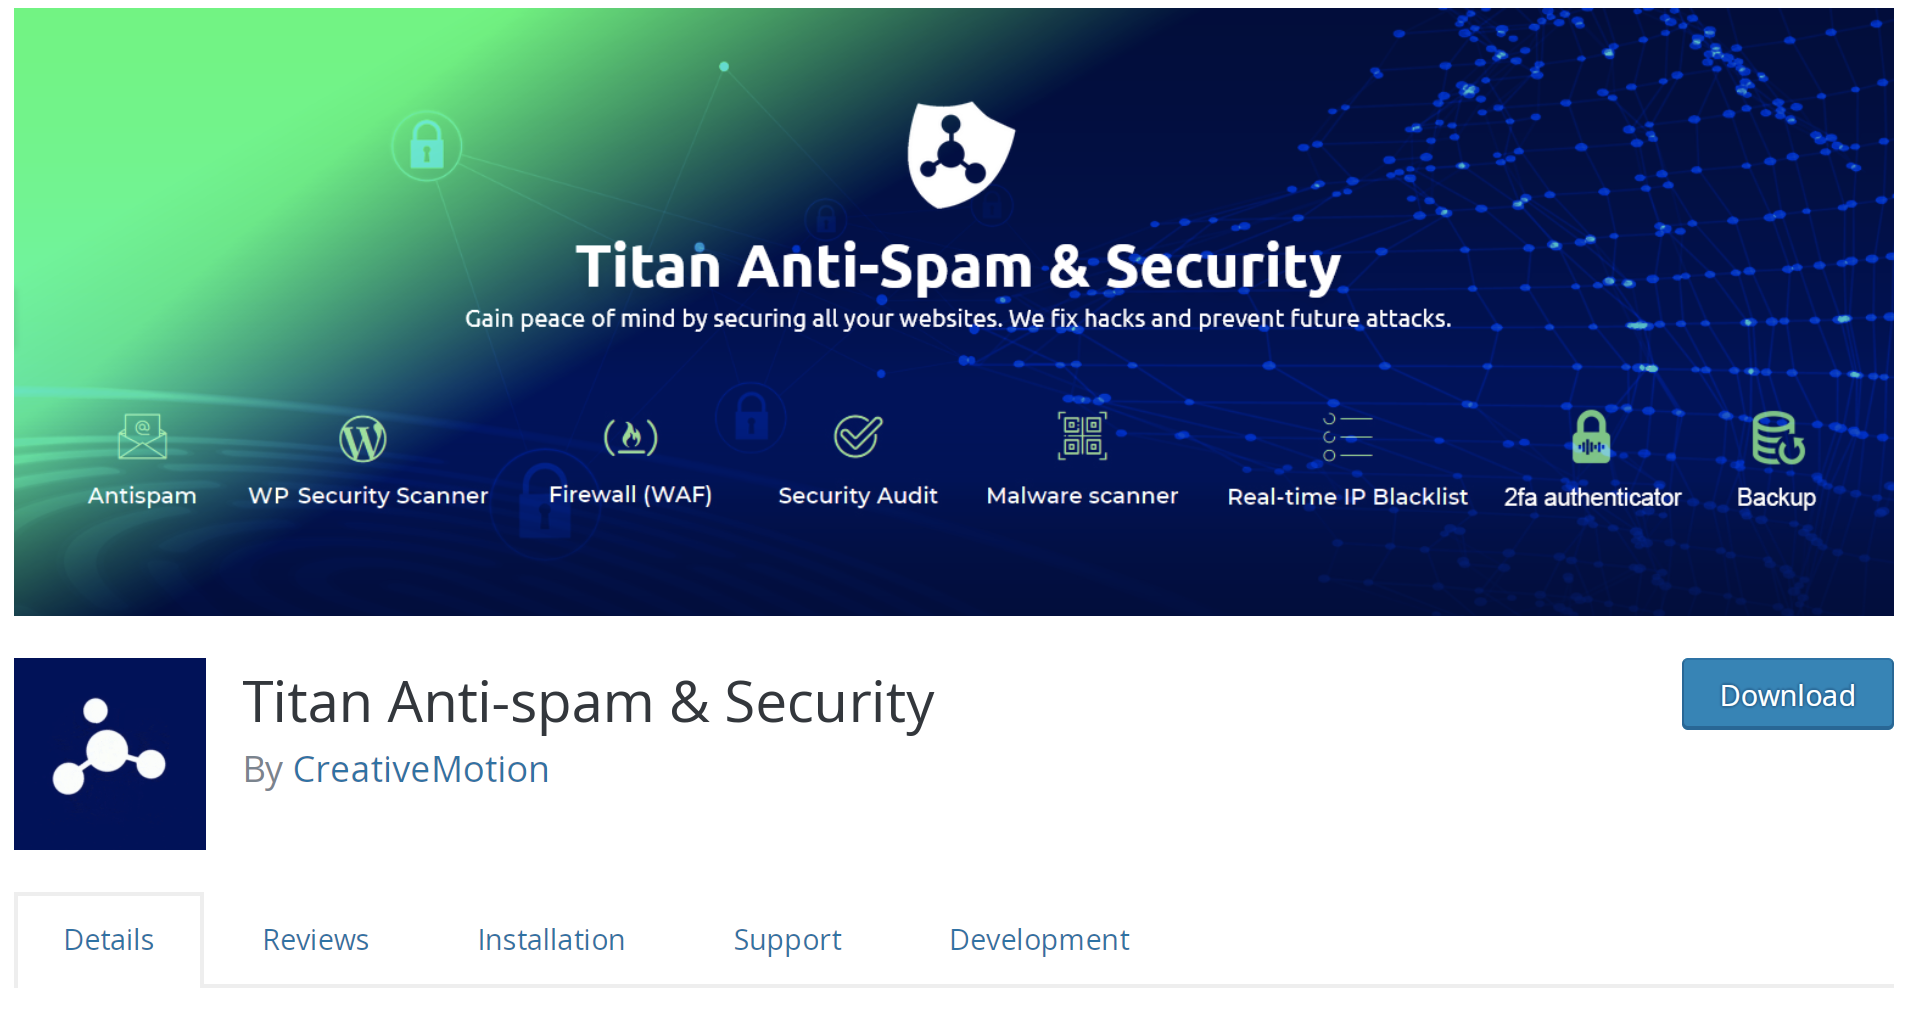 Titan Anti-spam listing in the WordPress plugin repository